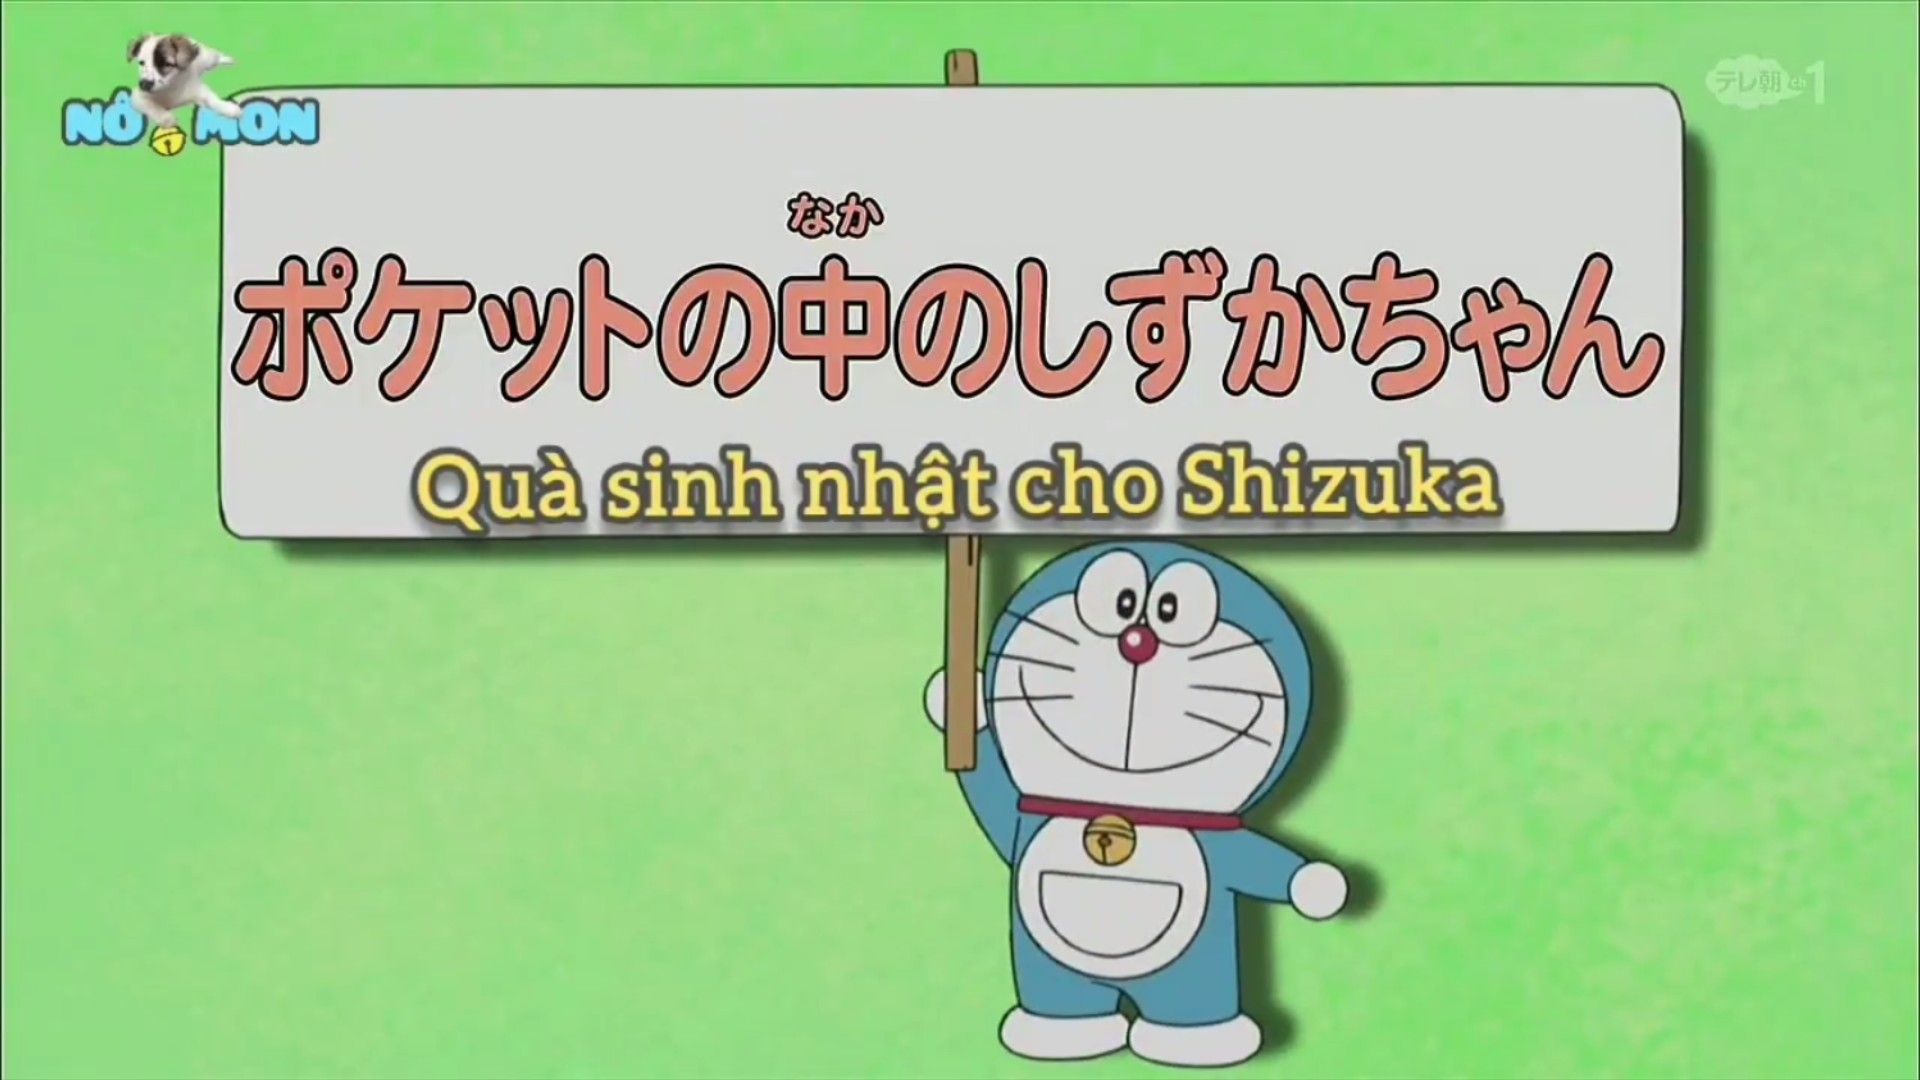 Cùng Shizuka tương lai làm bánh kem để mừng sinh nhật của Nobita nè   HAPPY BIRTHDAY NOBITA  78 Record NTK Kids WeloveHTV3 Nobita  Doraemon  By We Love HTV3  Facebook